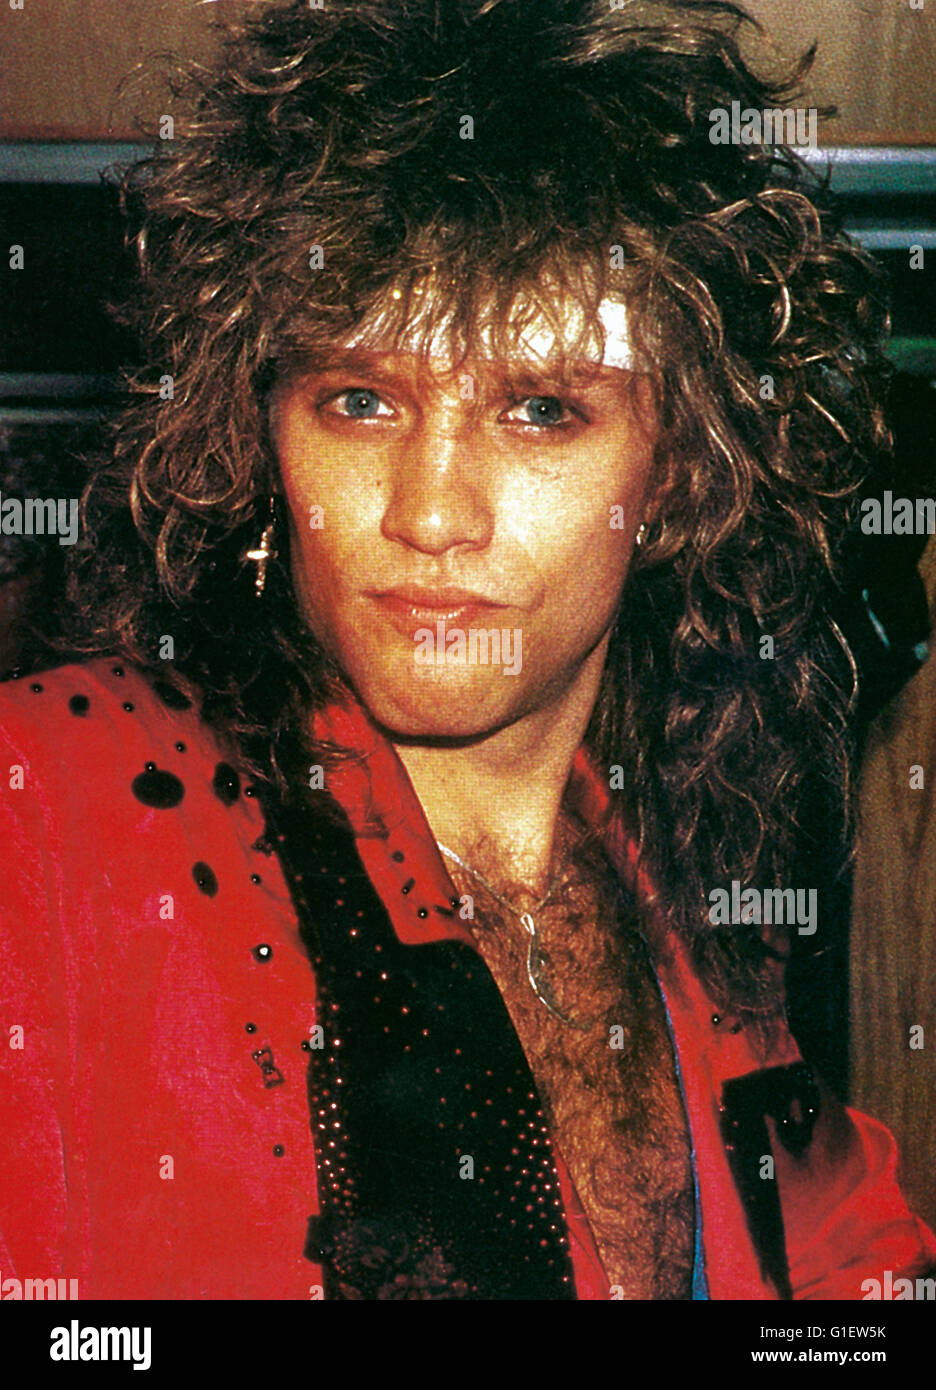 Der amerkanische Rocksänger, Komponist und Gitarrist Jon Bon Jovi, 1990er Jahre. American rock singer, composer and guitarist Jon Bon Jovi, 1990s. Stock Photo